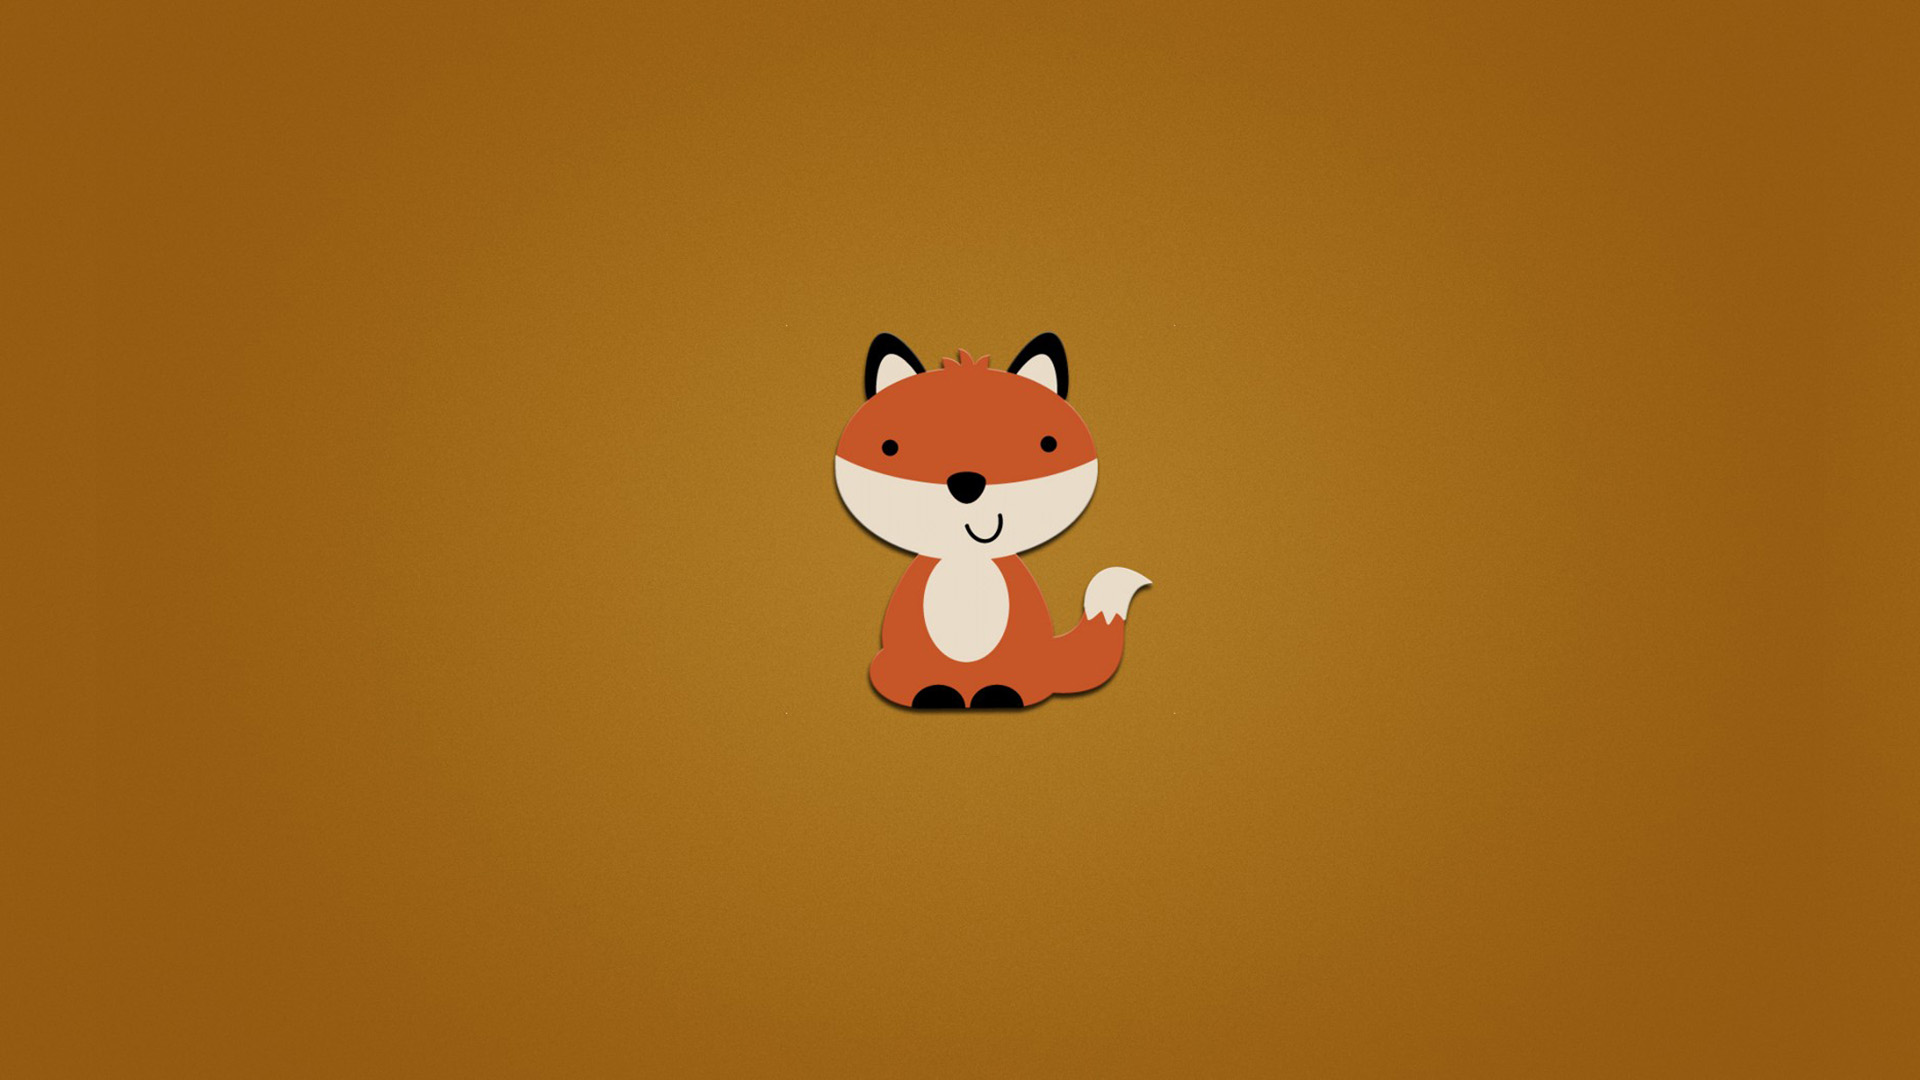 狐狸,尾巴,微笑图片,橙色背景,壁纸